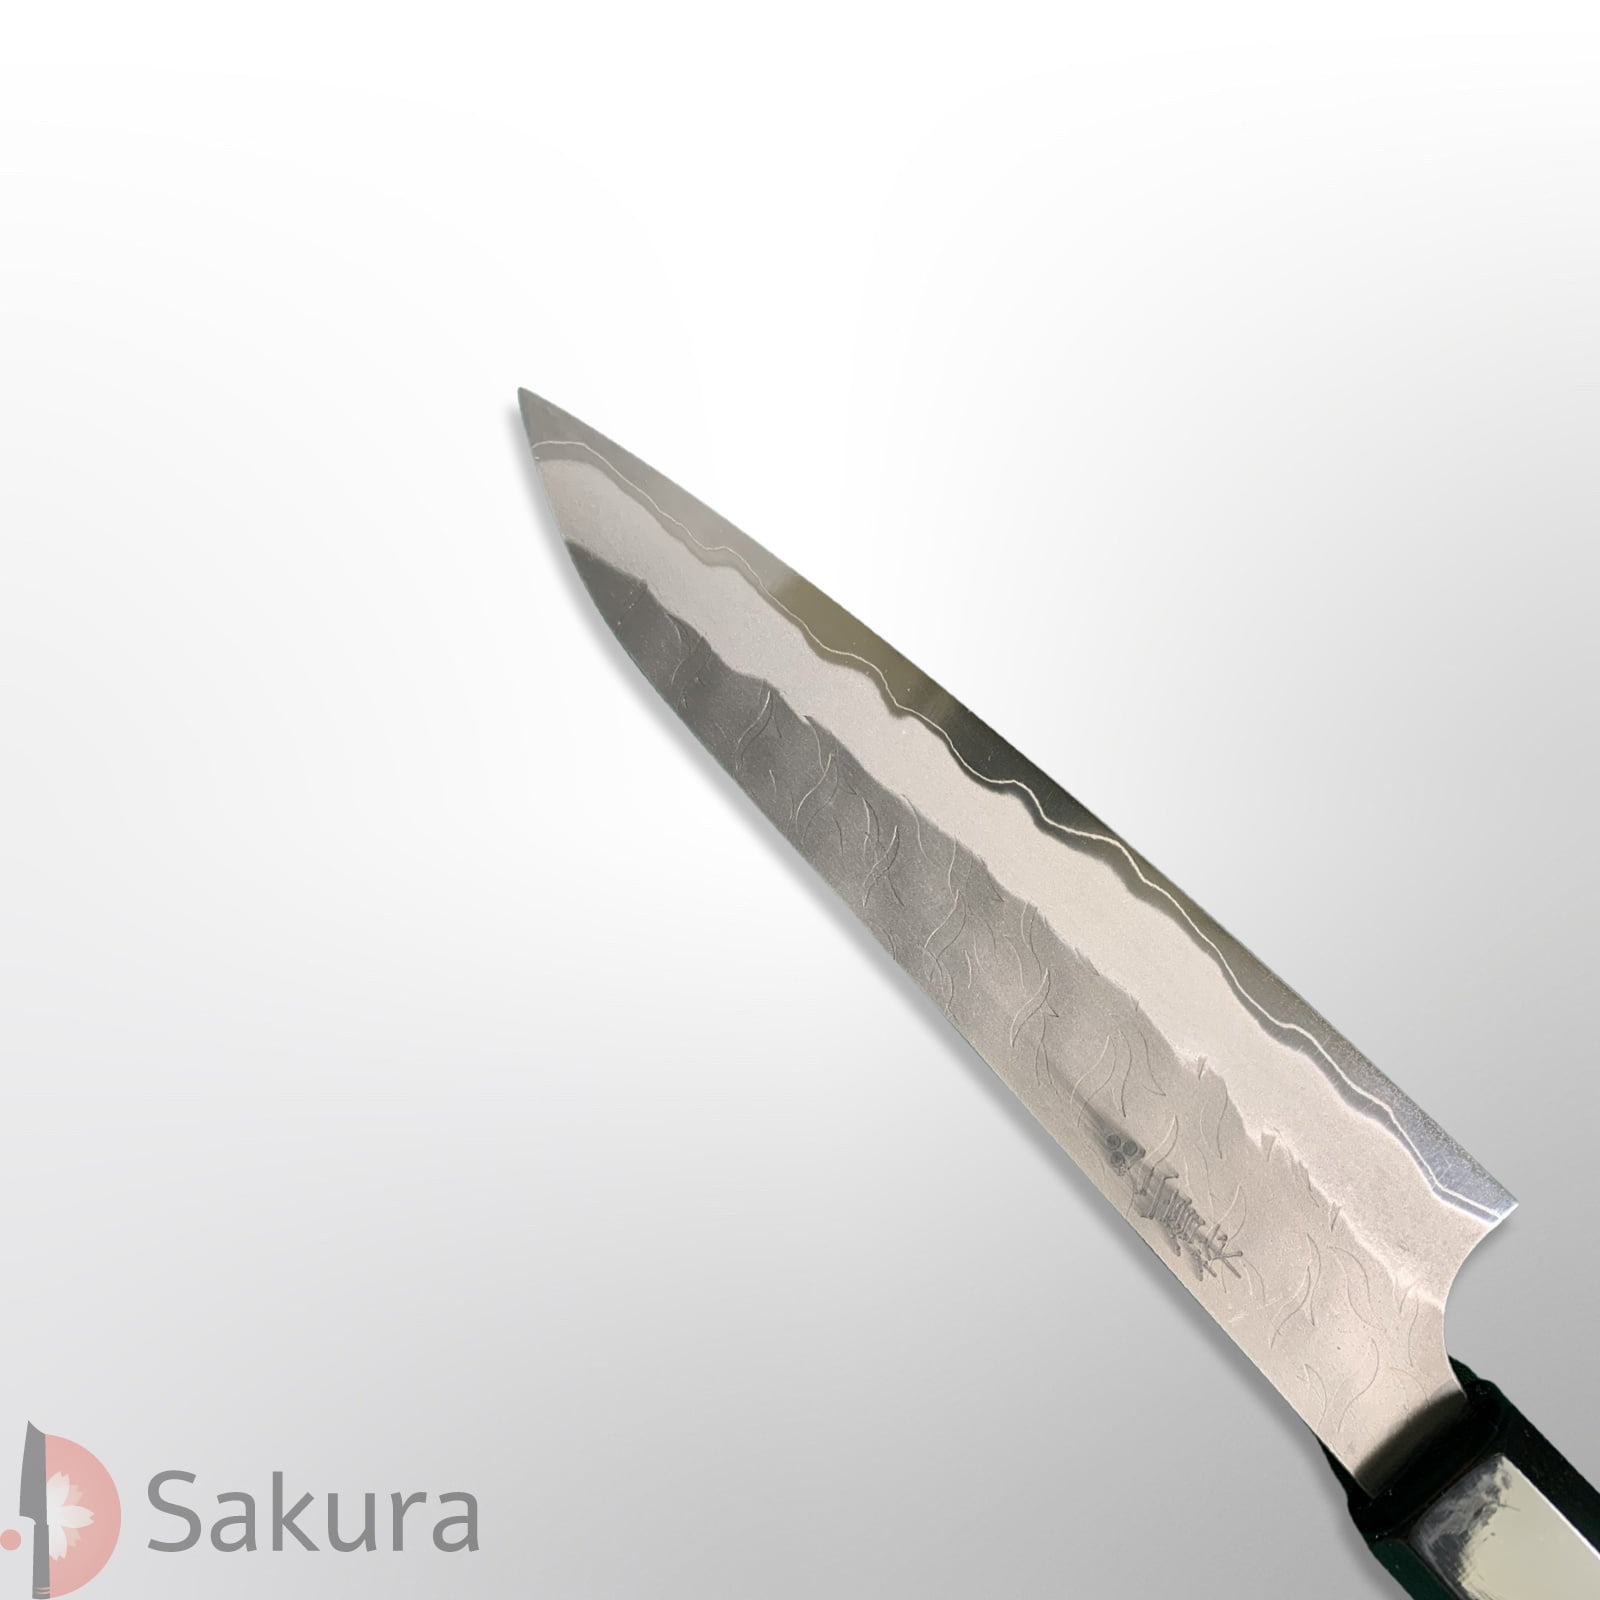 סכין עזר קטנה רב-תכליתית פֶּטִי 150מ״מ מחושלת בעבודת יד 3 שכבות: פלדת פחמן יפנית מתקדמת Aogami Super גימור מט עם ריקוע פטיש ניגארה יפן SKNIGAASPETTY15016